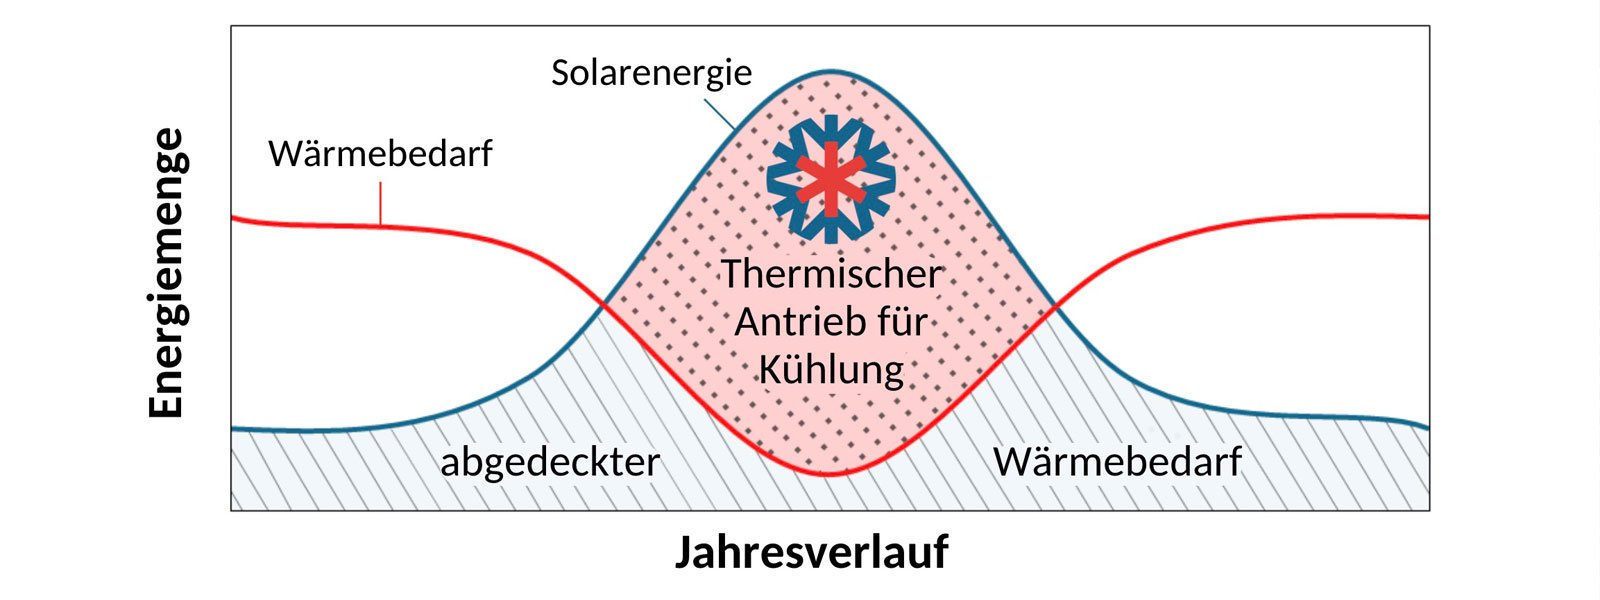 Solare Kühlung - so funktioniert es